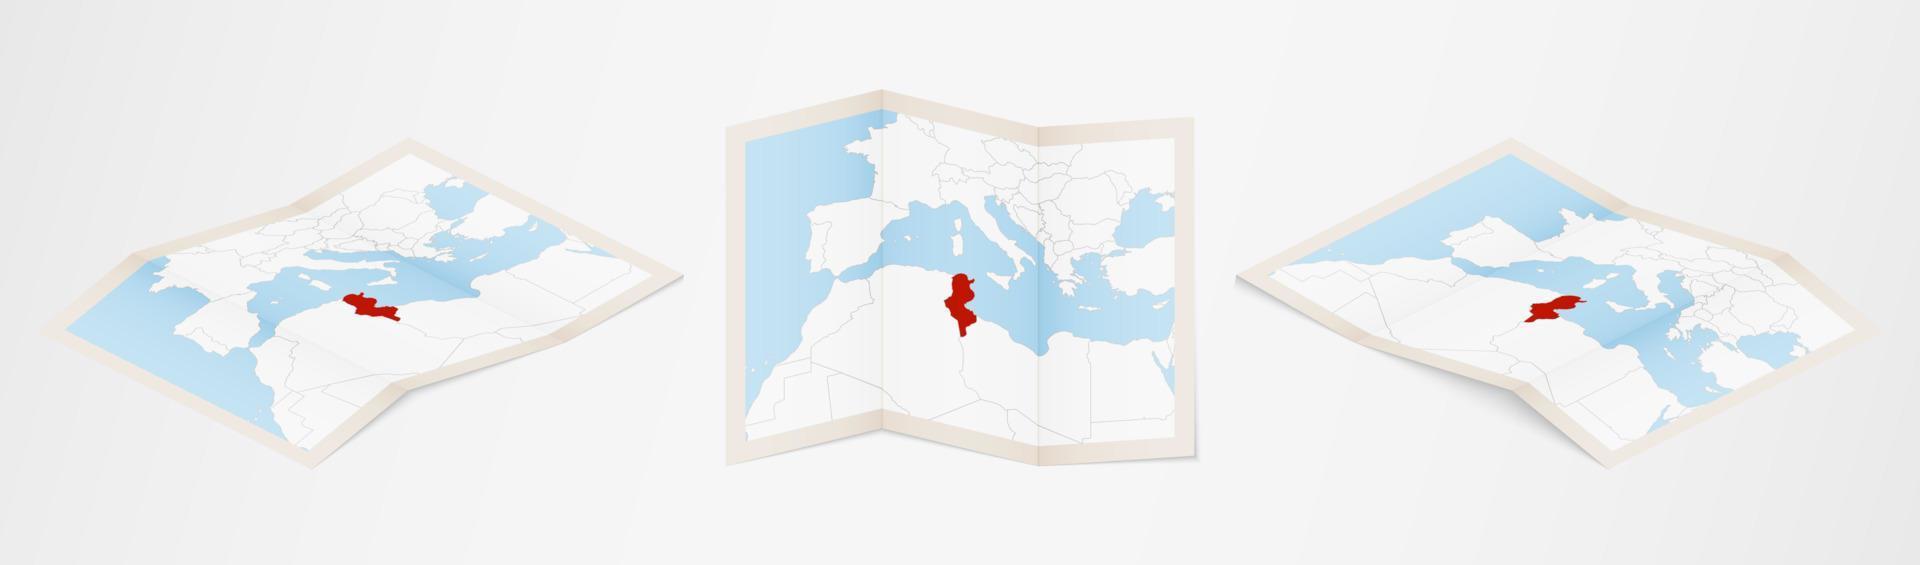 carte pliée de la tunisie en trois versions différentes. vecteur